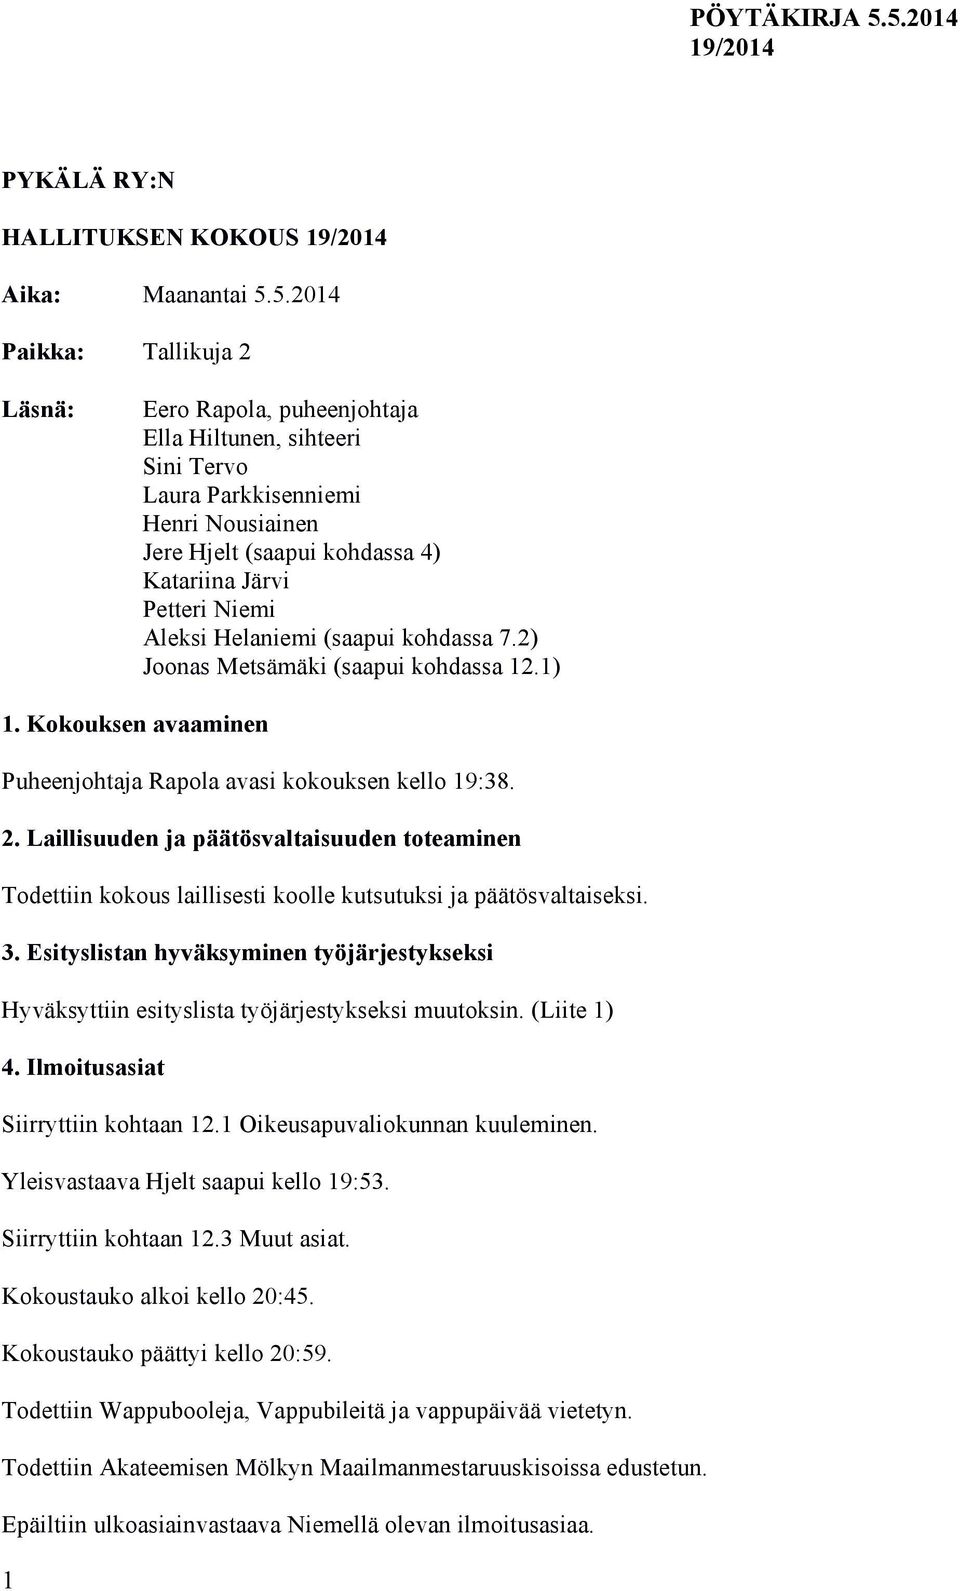 Aleksi Helaniemi (saapui kohdassa 7.2) Joonas Metsämäki (saapui kohdassa 12.1) 1. Kokouksen avaaminen Puheenjohtaja Rapola avasi kokouksen kello 19:38. 2.